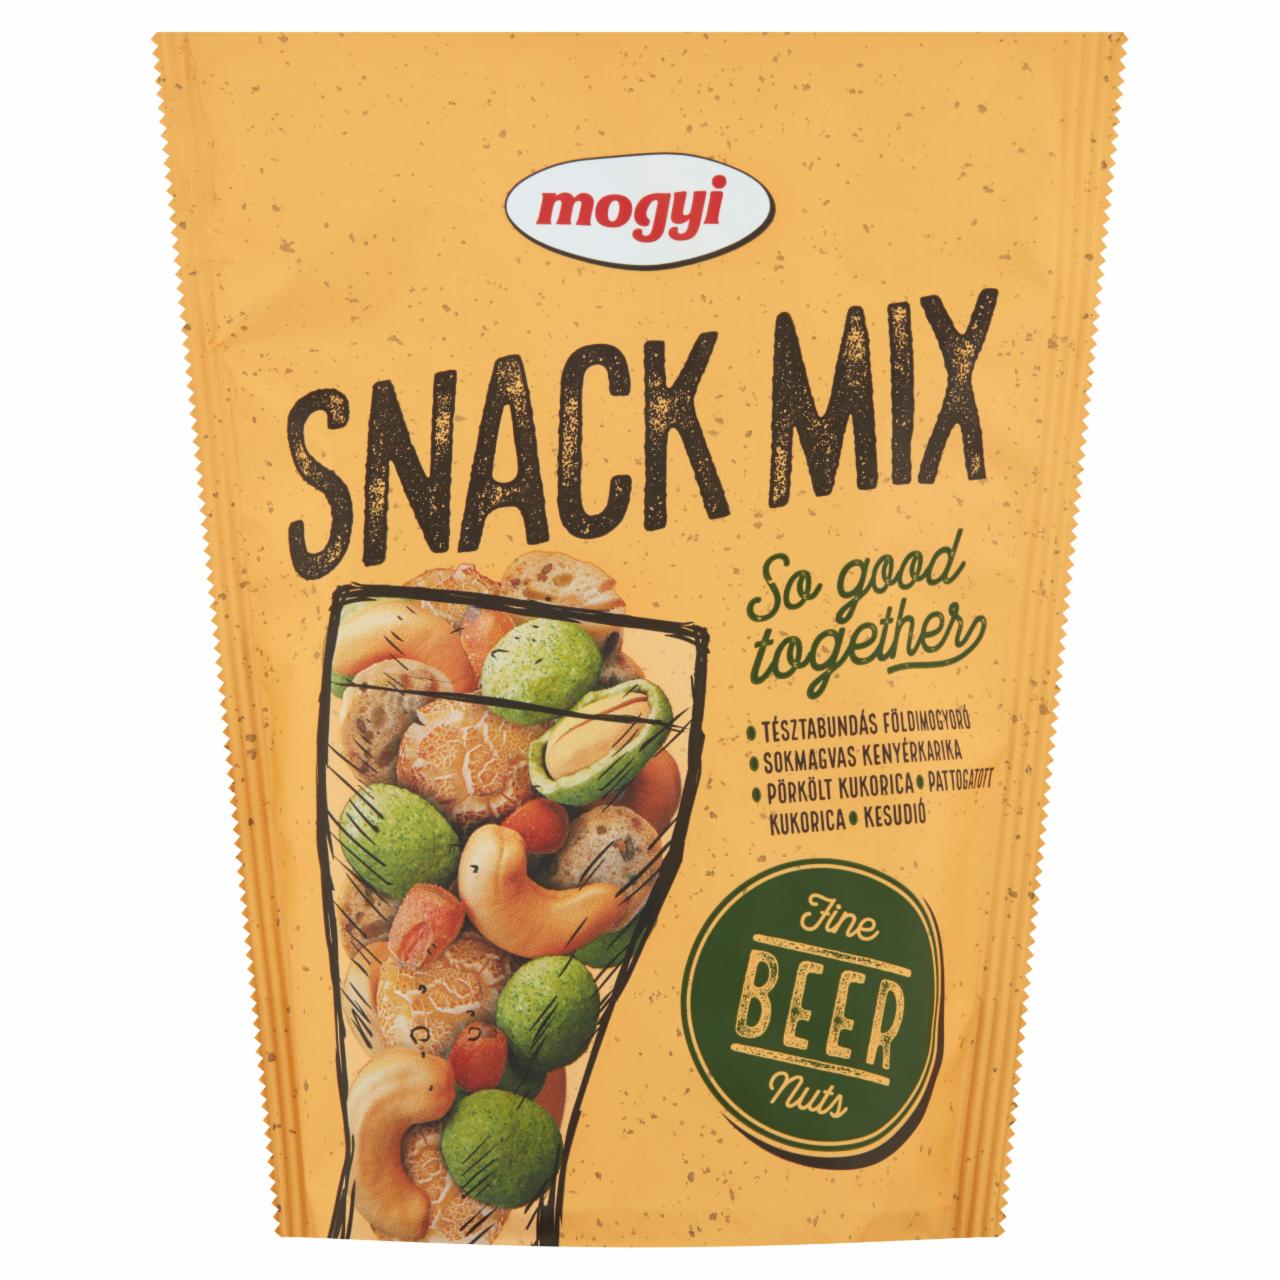 Képek - Mogyi Snack Mix földimogyoró, kenyérkarika, pörkölt- és pattogatott kukorica, kesudió keveréke 80 g